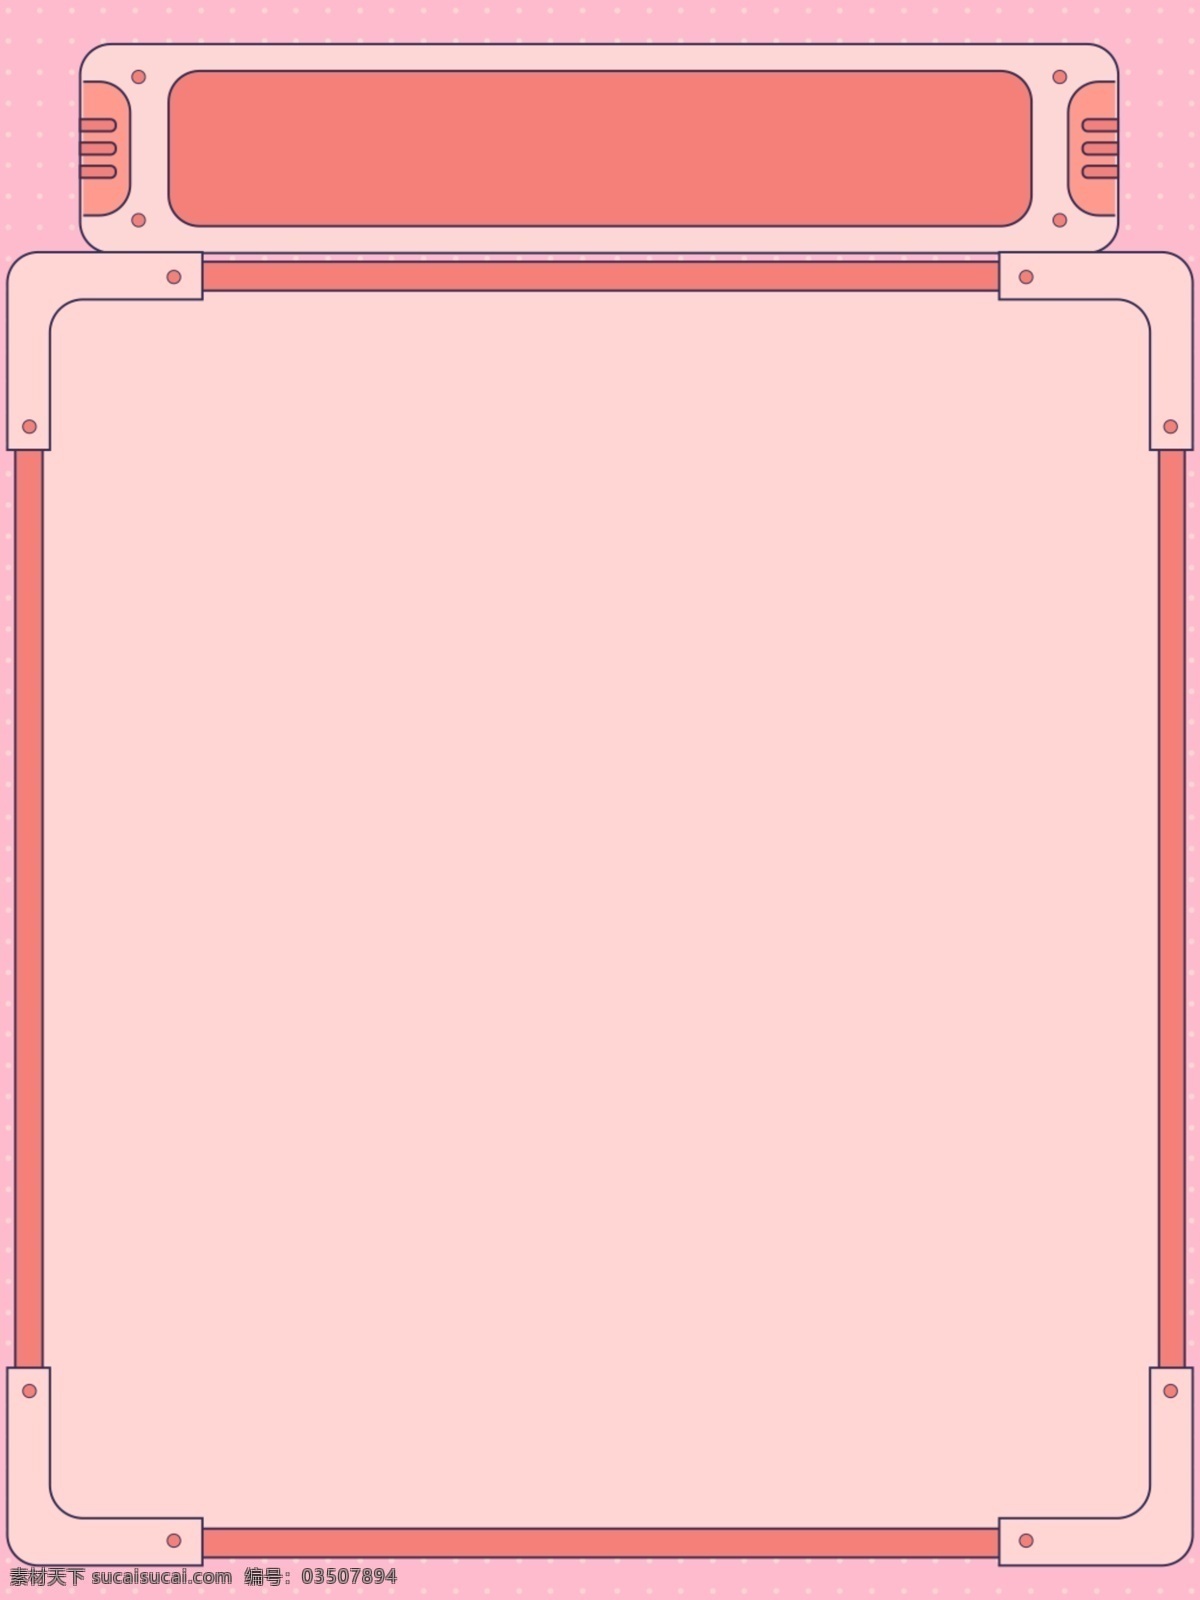 粉色 相框 不规则 几何 背景 边框背景 几何背景 线条素材 图形背景 可爱背景 粉色背景 广告背景